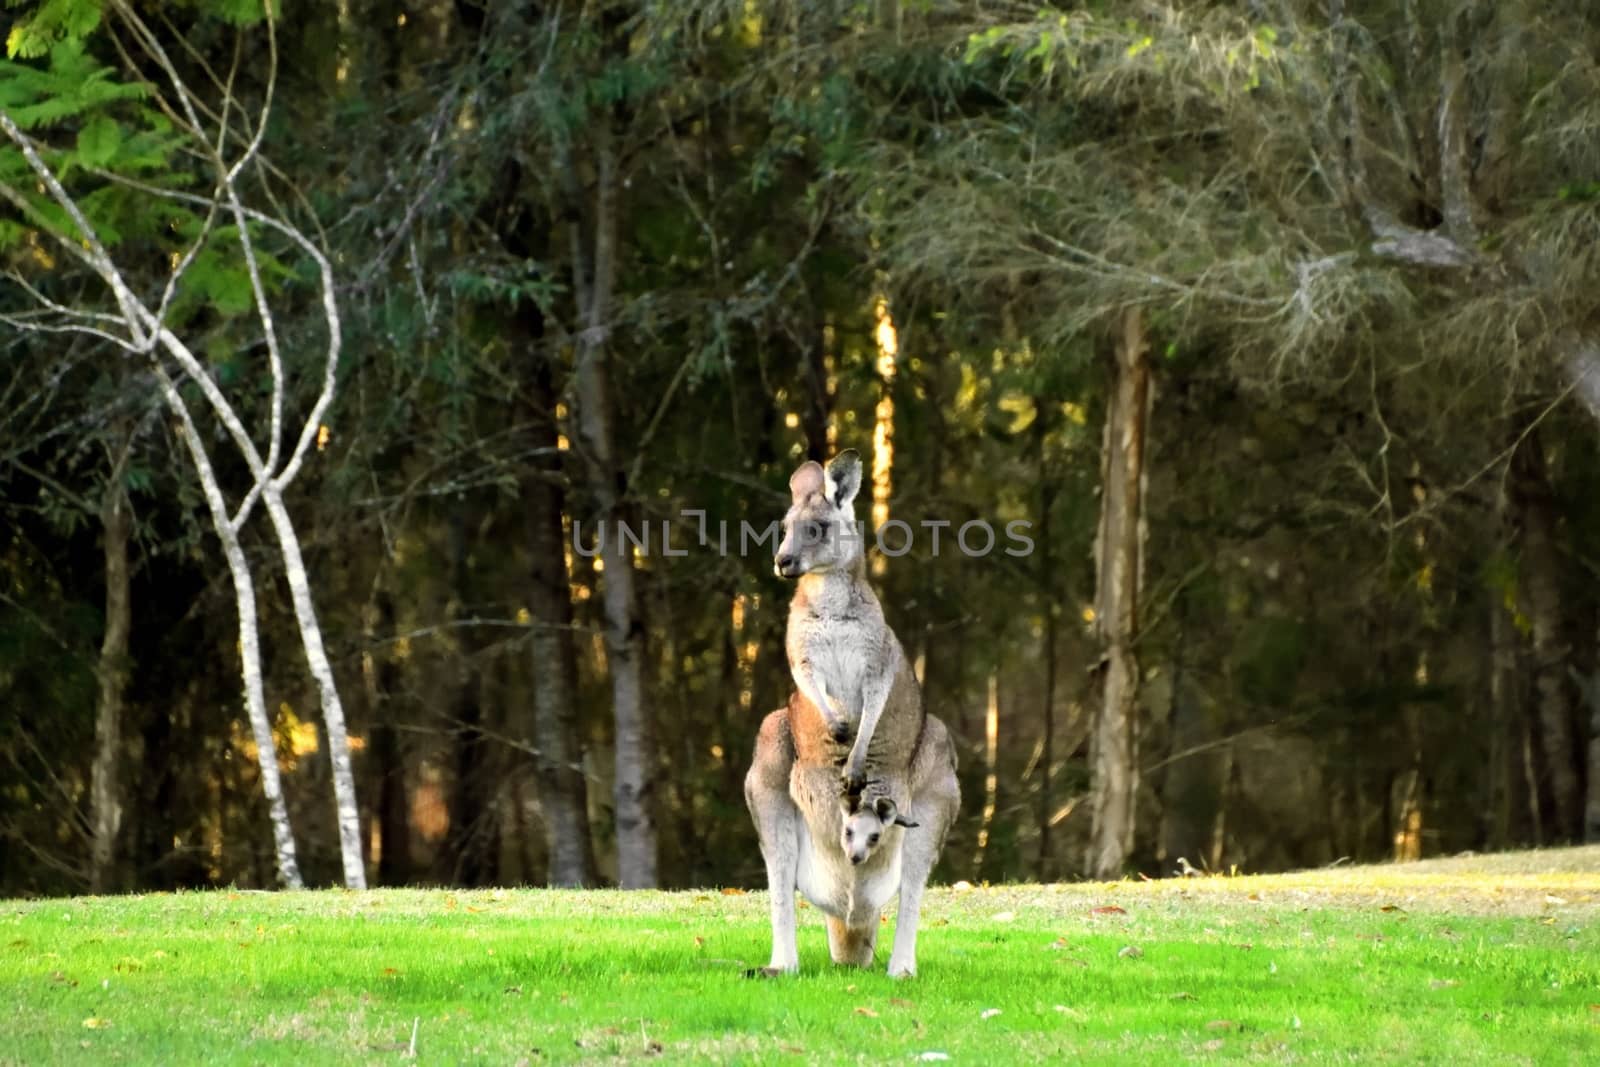 A Kangaroo and her Joey on grass by Binikins